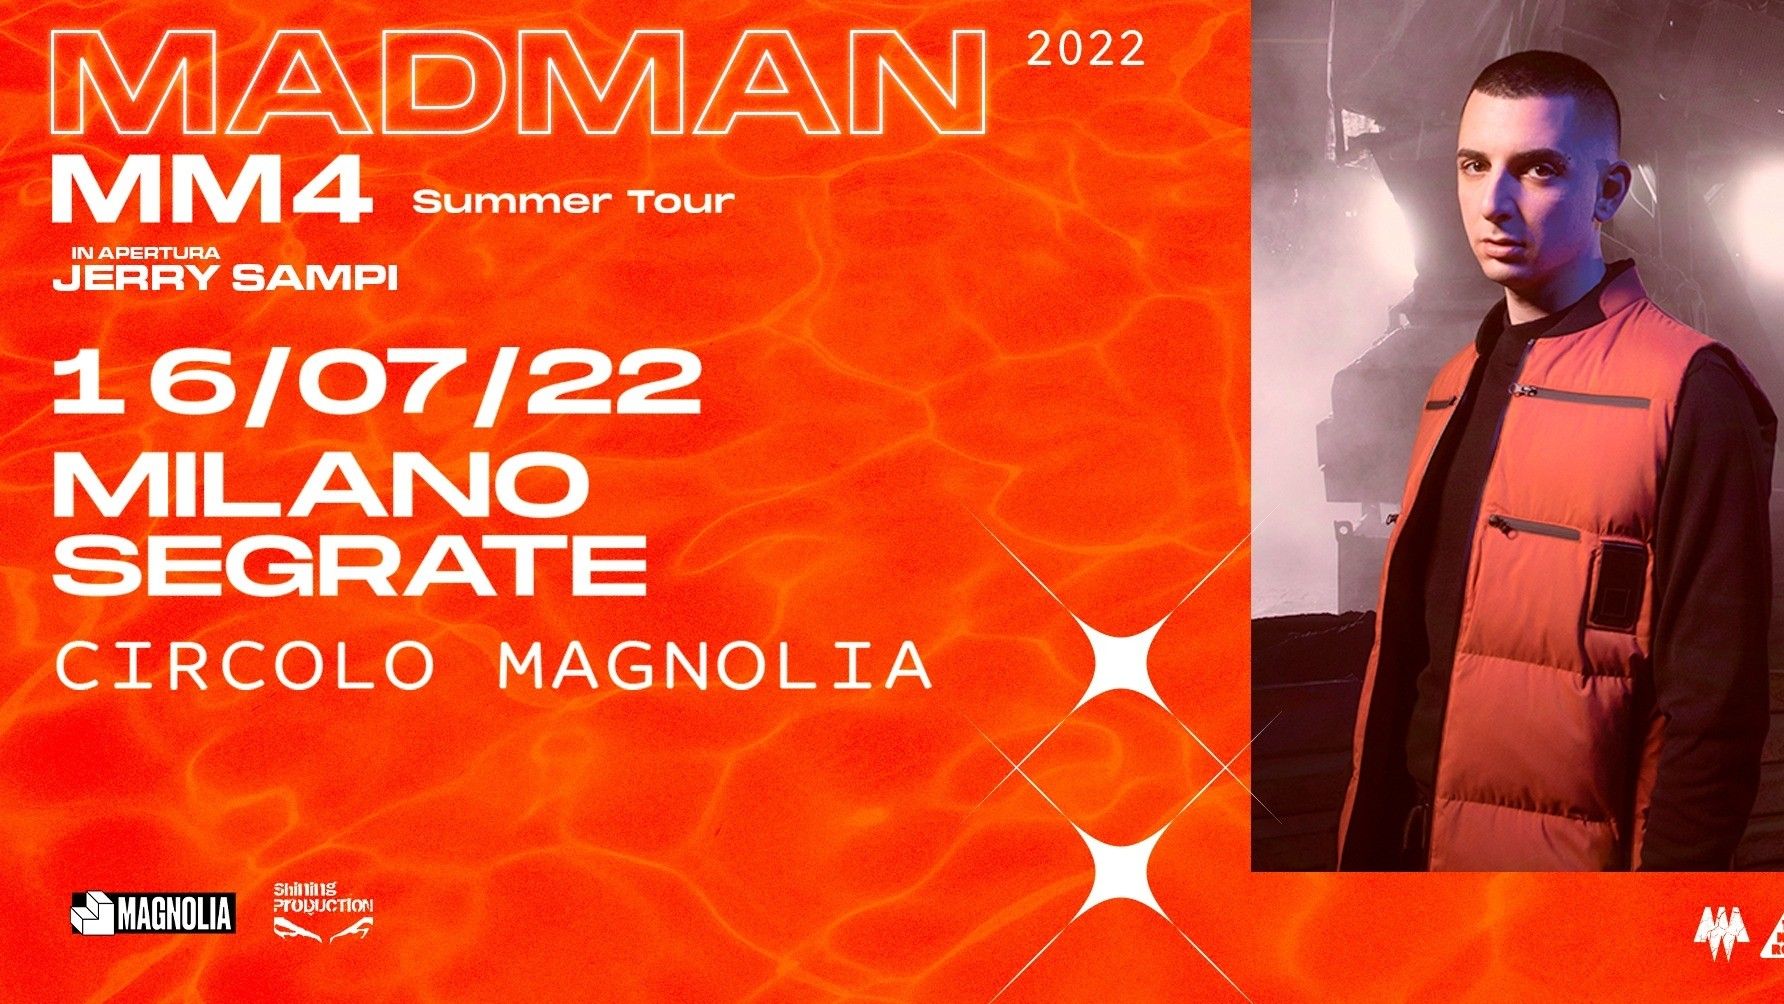 Madman "MM4 Summer Tour"